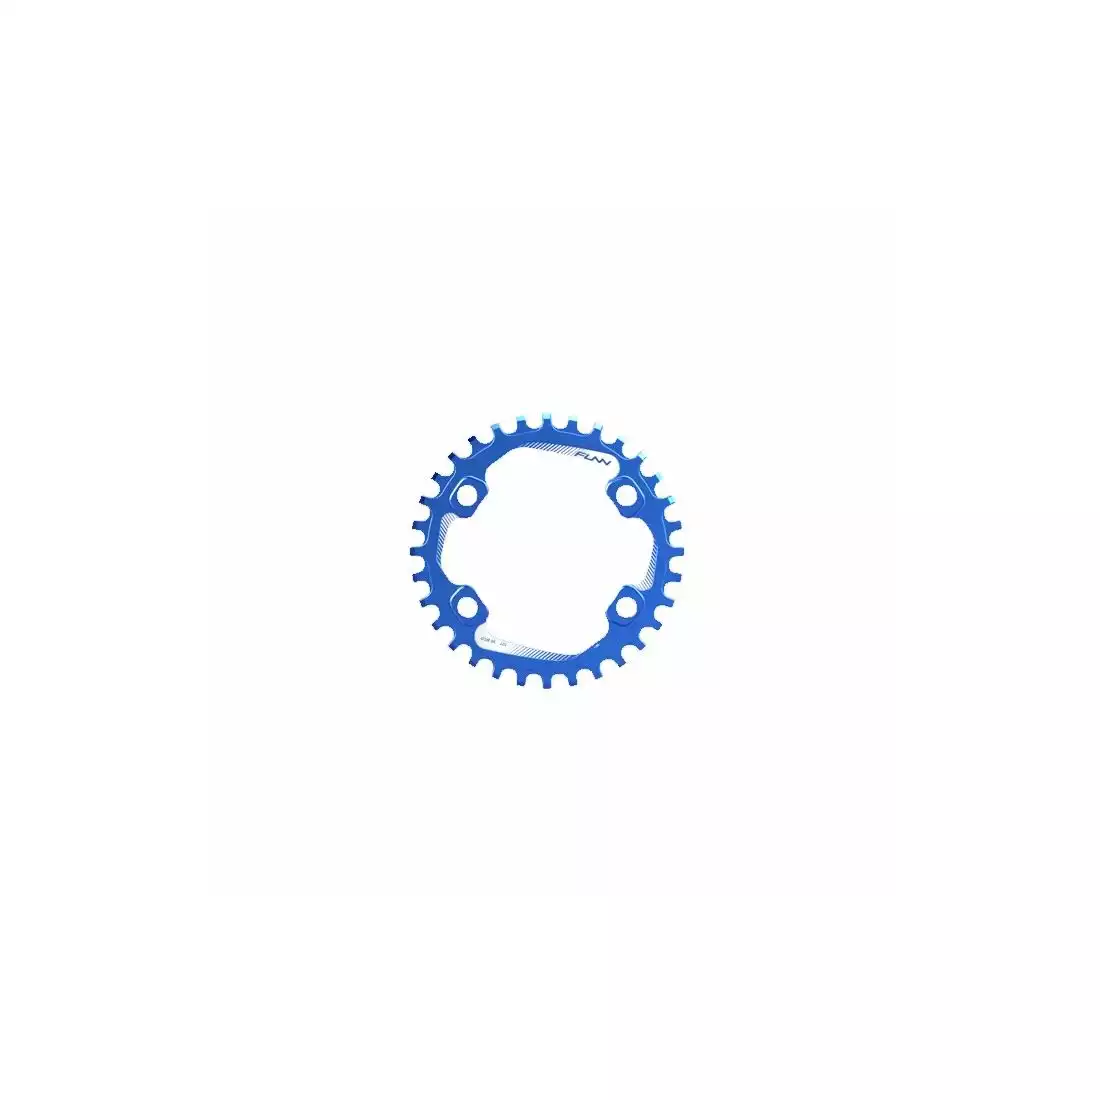 FUNN SOLO 96 BCD NARROW WIDE 34T řetězové kolo na kliku modrý